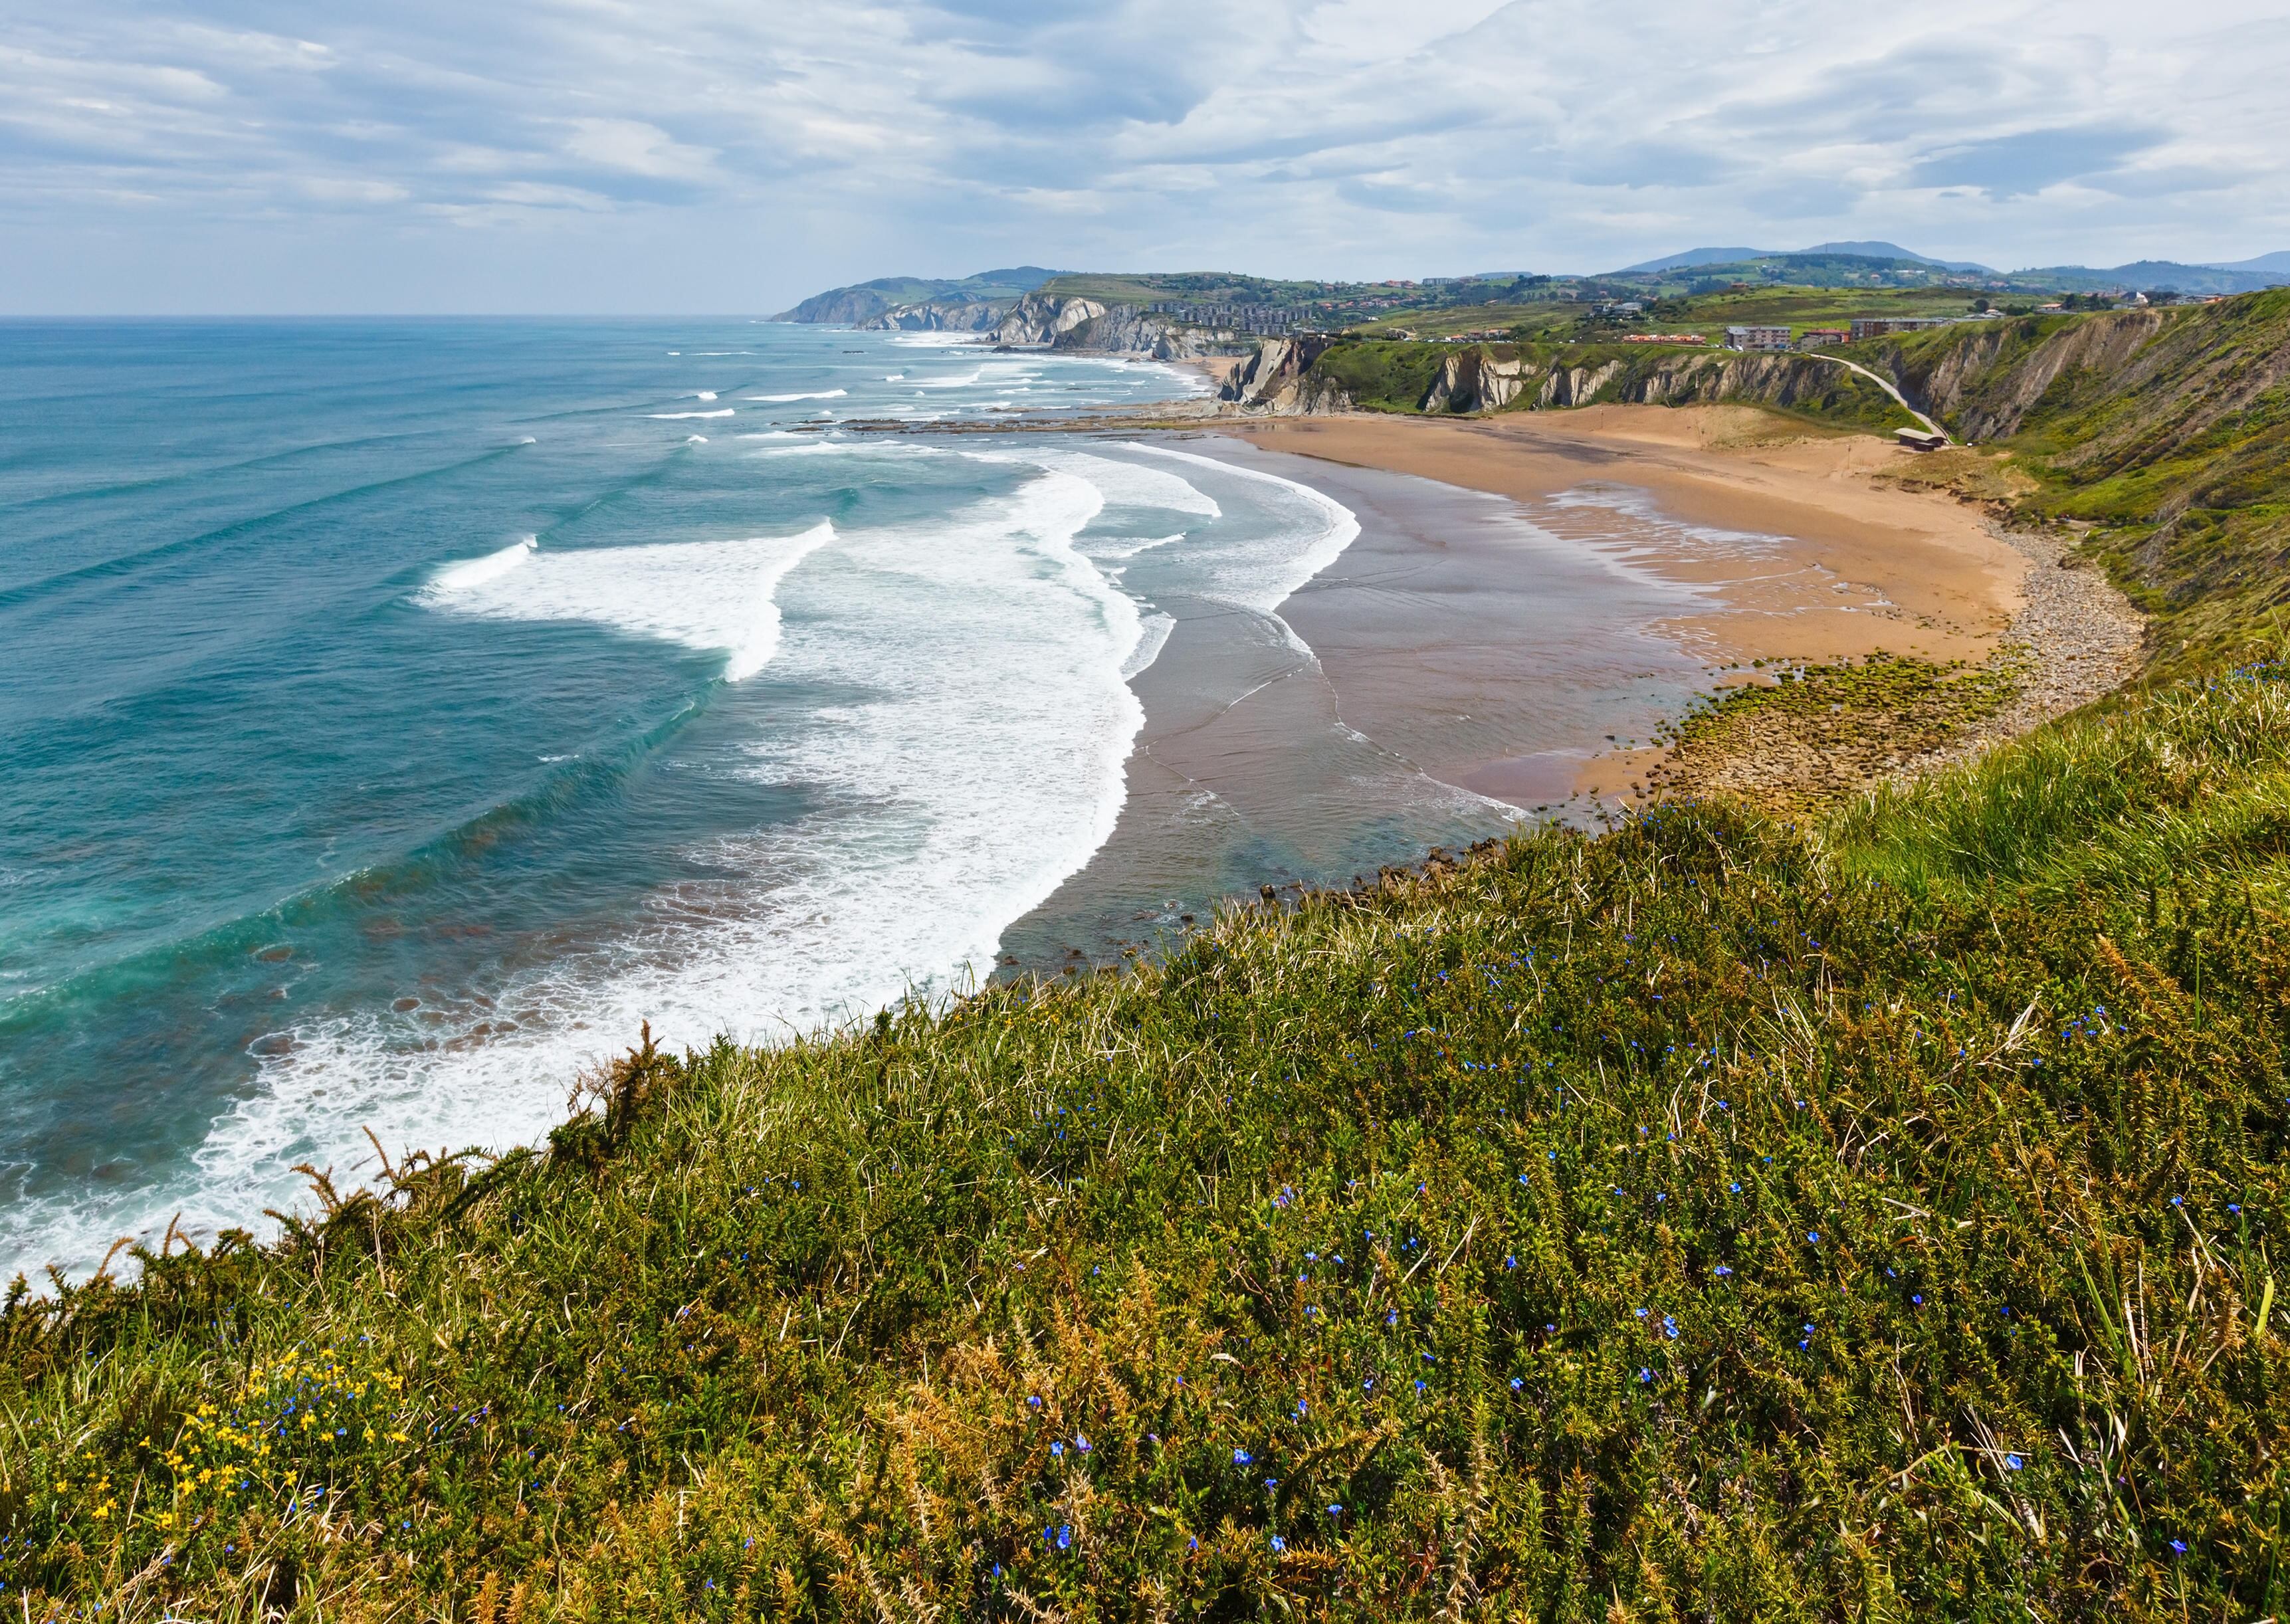 La costa de Getxo (Bizkaia) incluye playas encajadas entre poderosos acantilados.